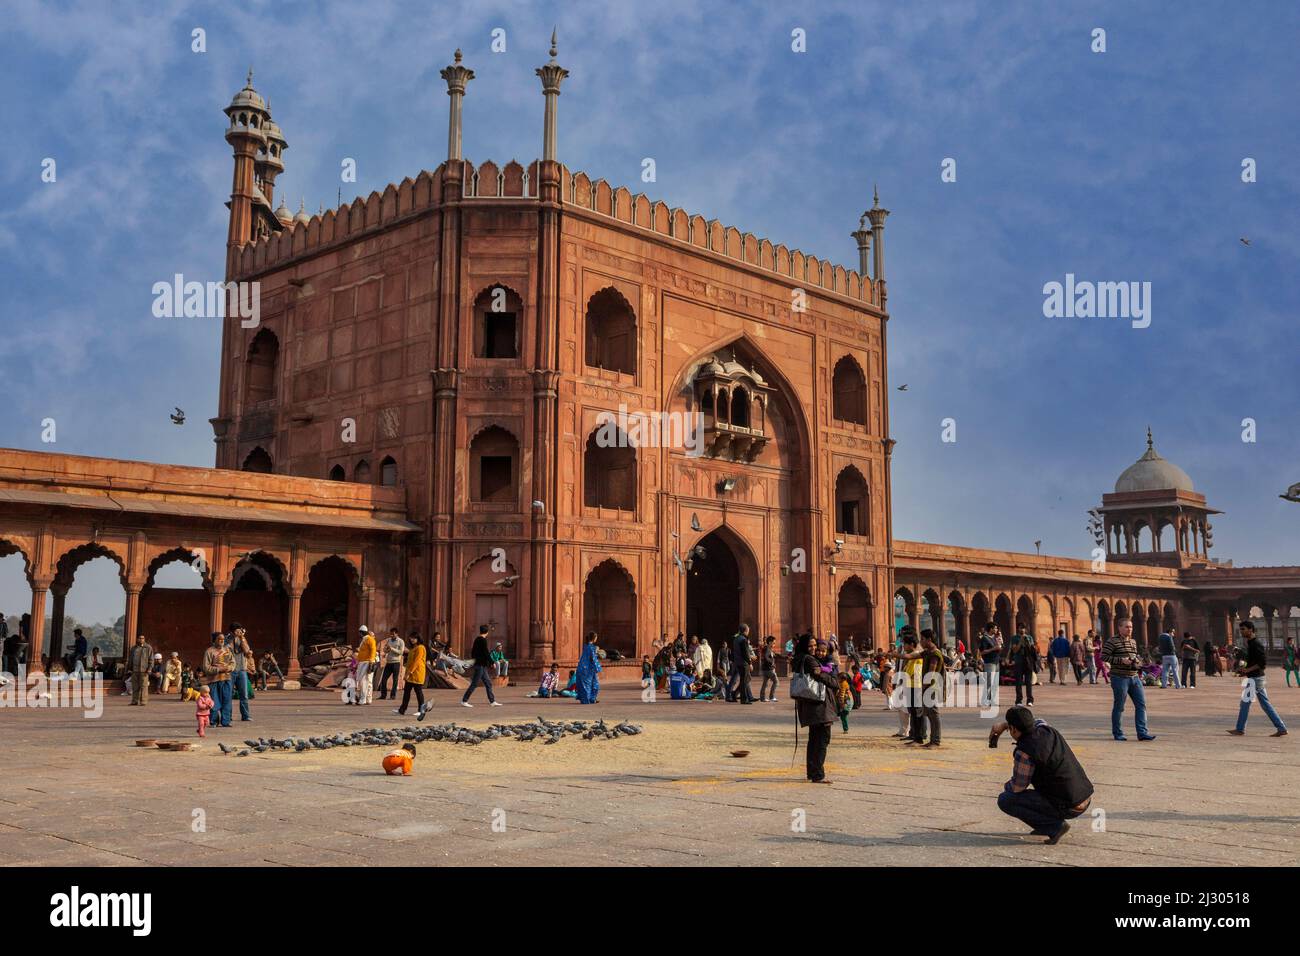 New Delhi, Inde. Cour de la Jama Masjid (mosquée du vendredi), la plus grande mosquée de l'Inde, construite de 1644 à 1656. Banque D'Images